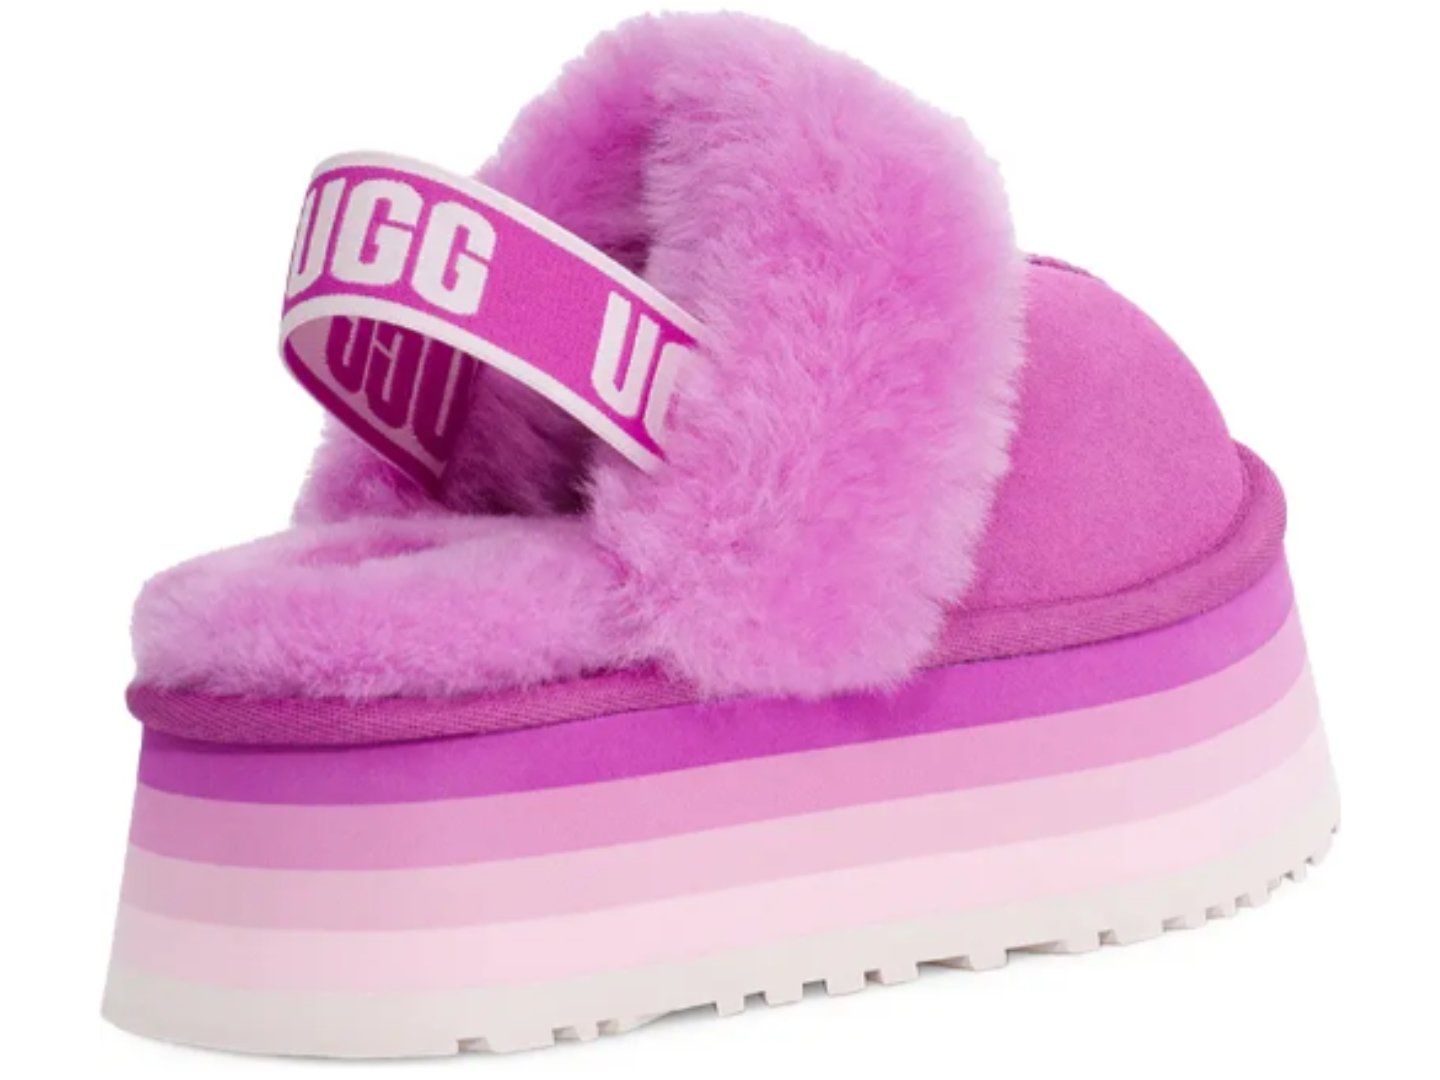 UGG: Funkette in Purple Ruby - J. Cole Shoes